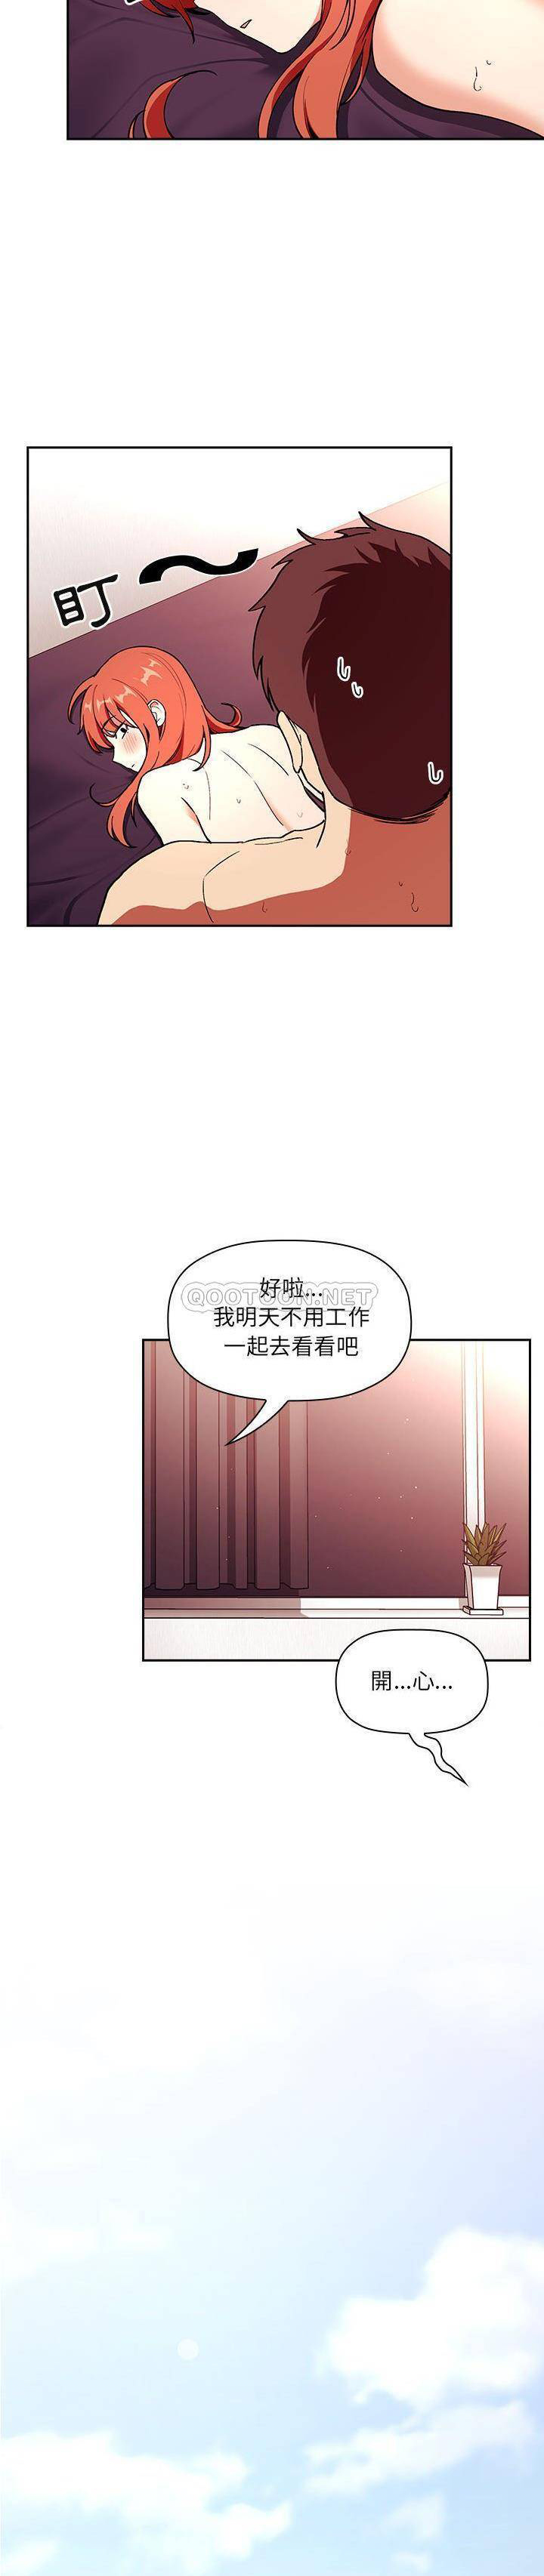 韩国污漫画 BJ的夢幻直播 第39话 9